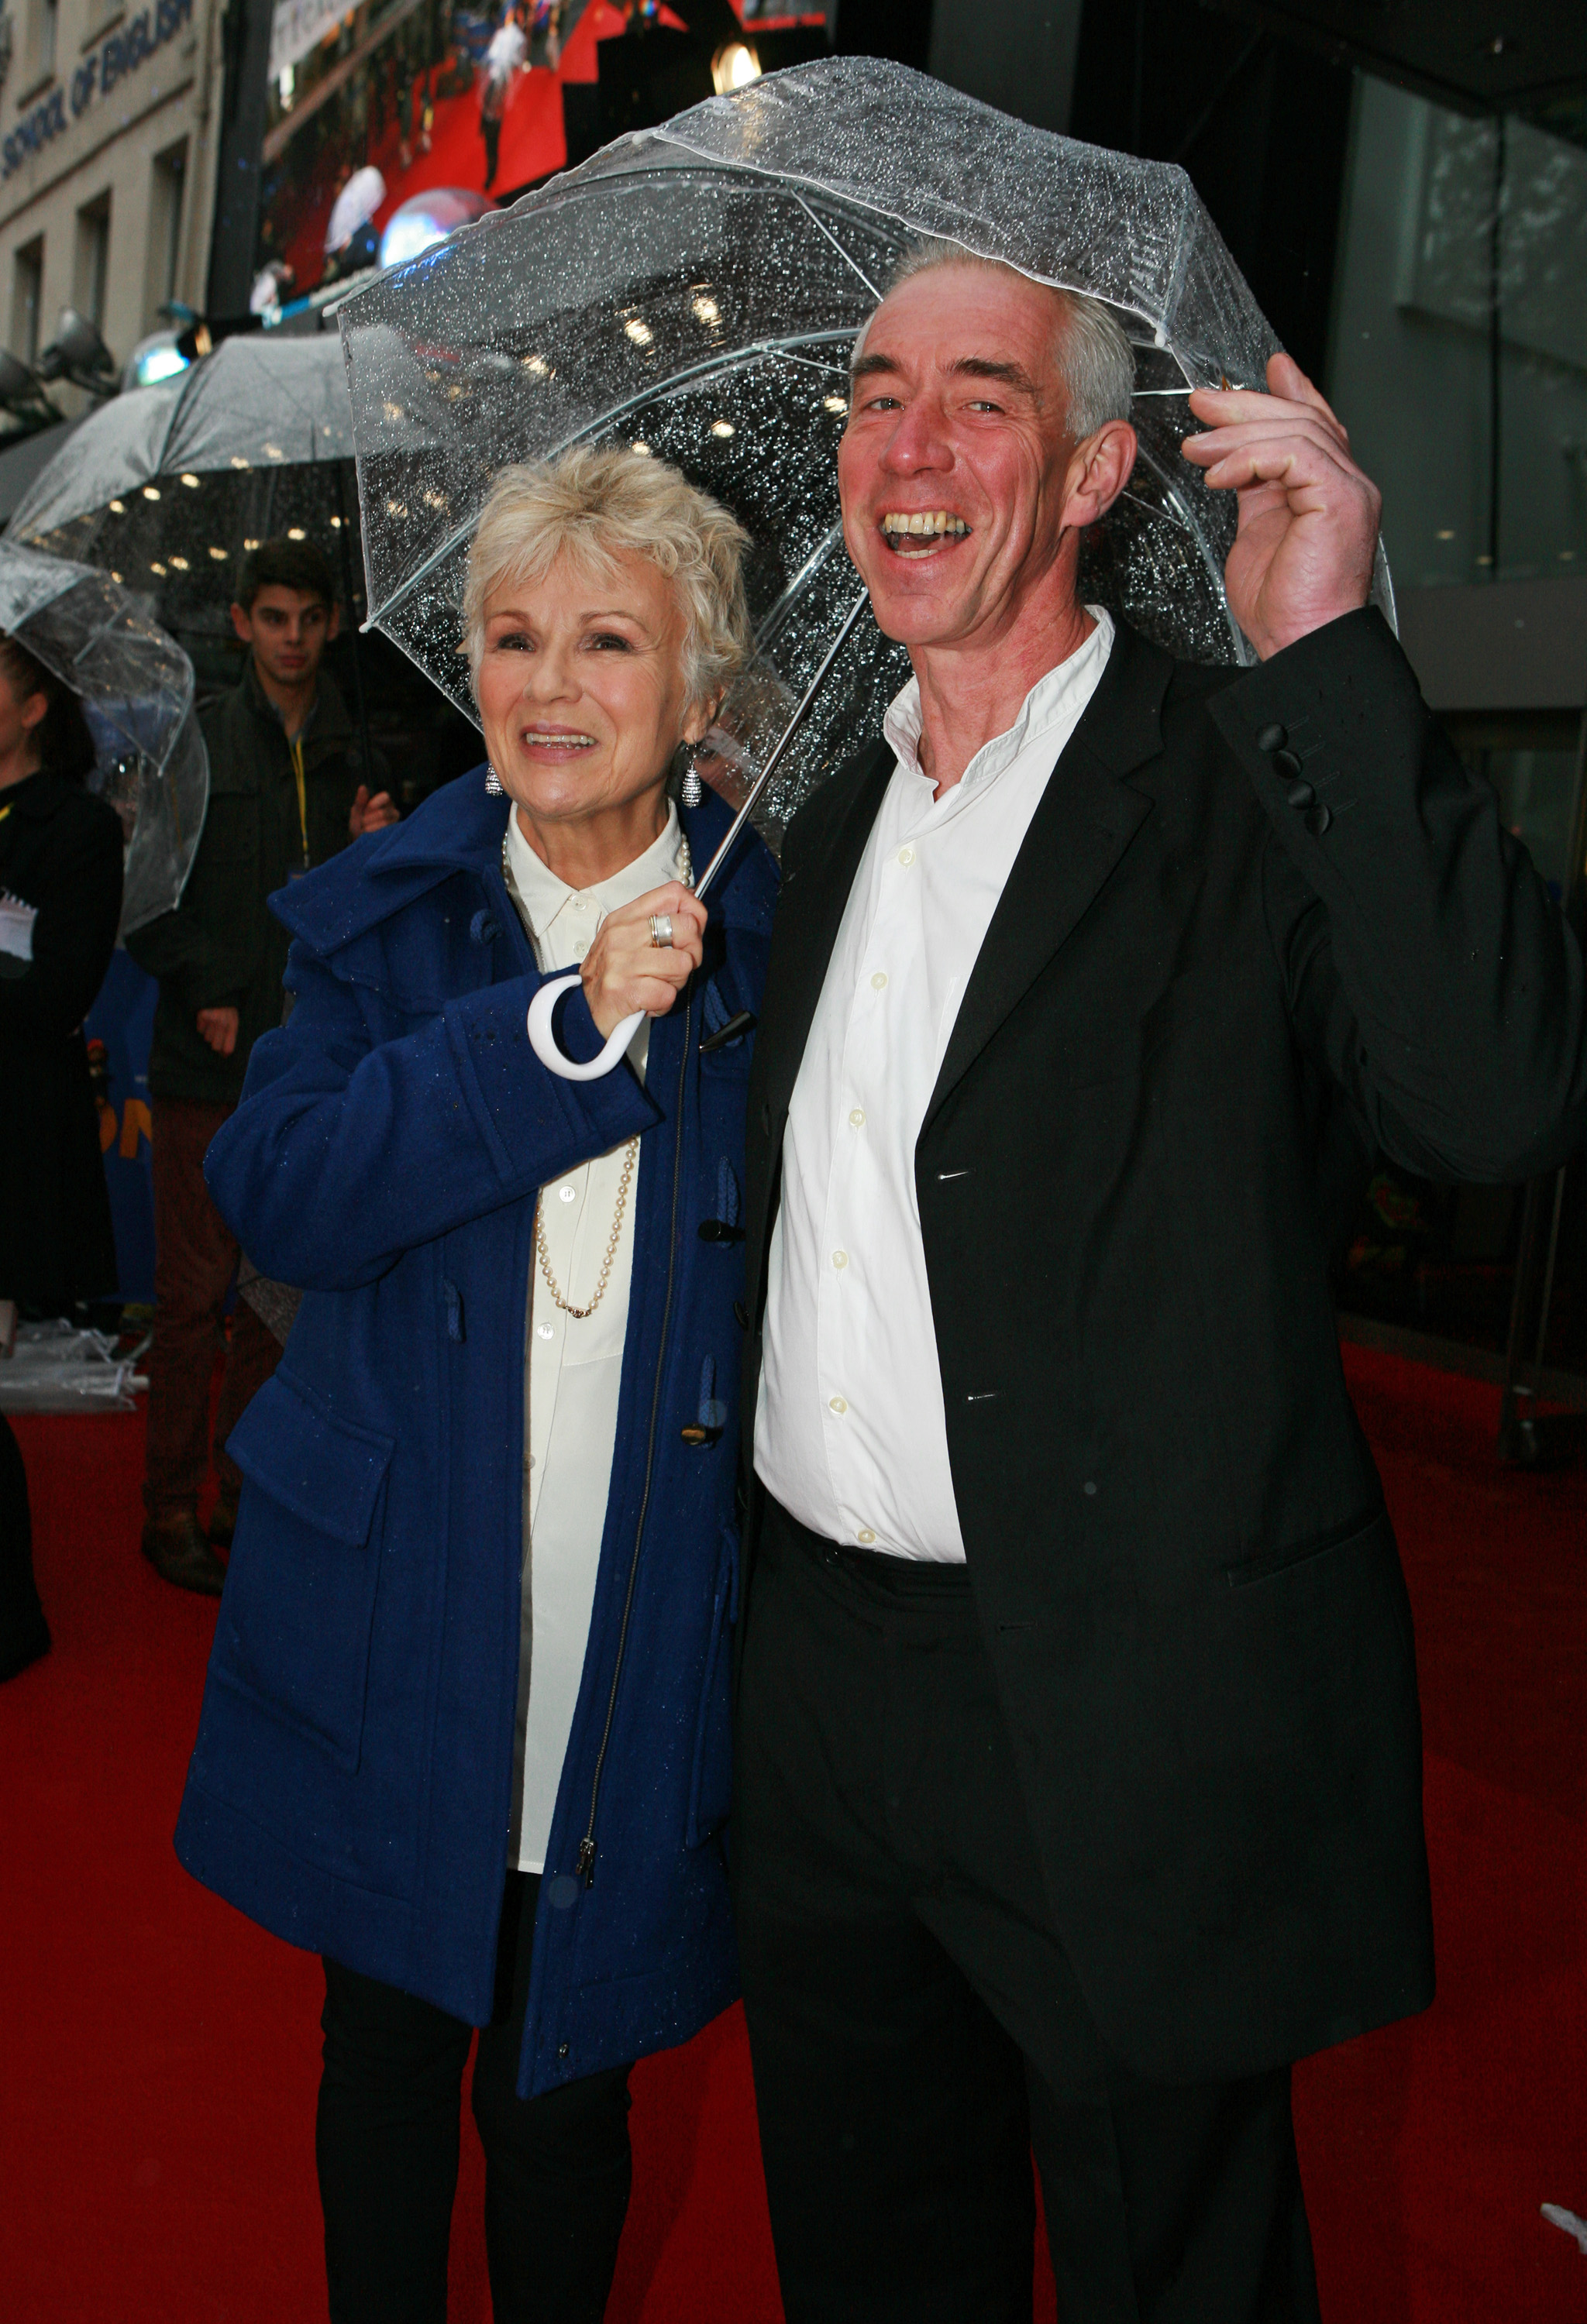 Julie Walters und Ehemann Grant Roffey bei der Weltpremiere von "Paddington" 2014 in London, England.  | Quelle: Getty Images